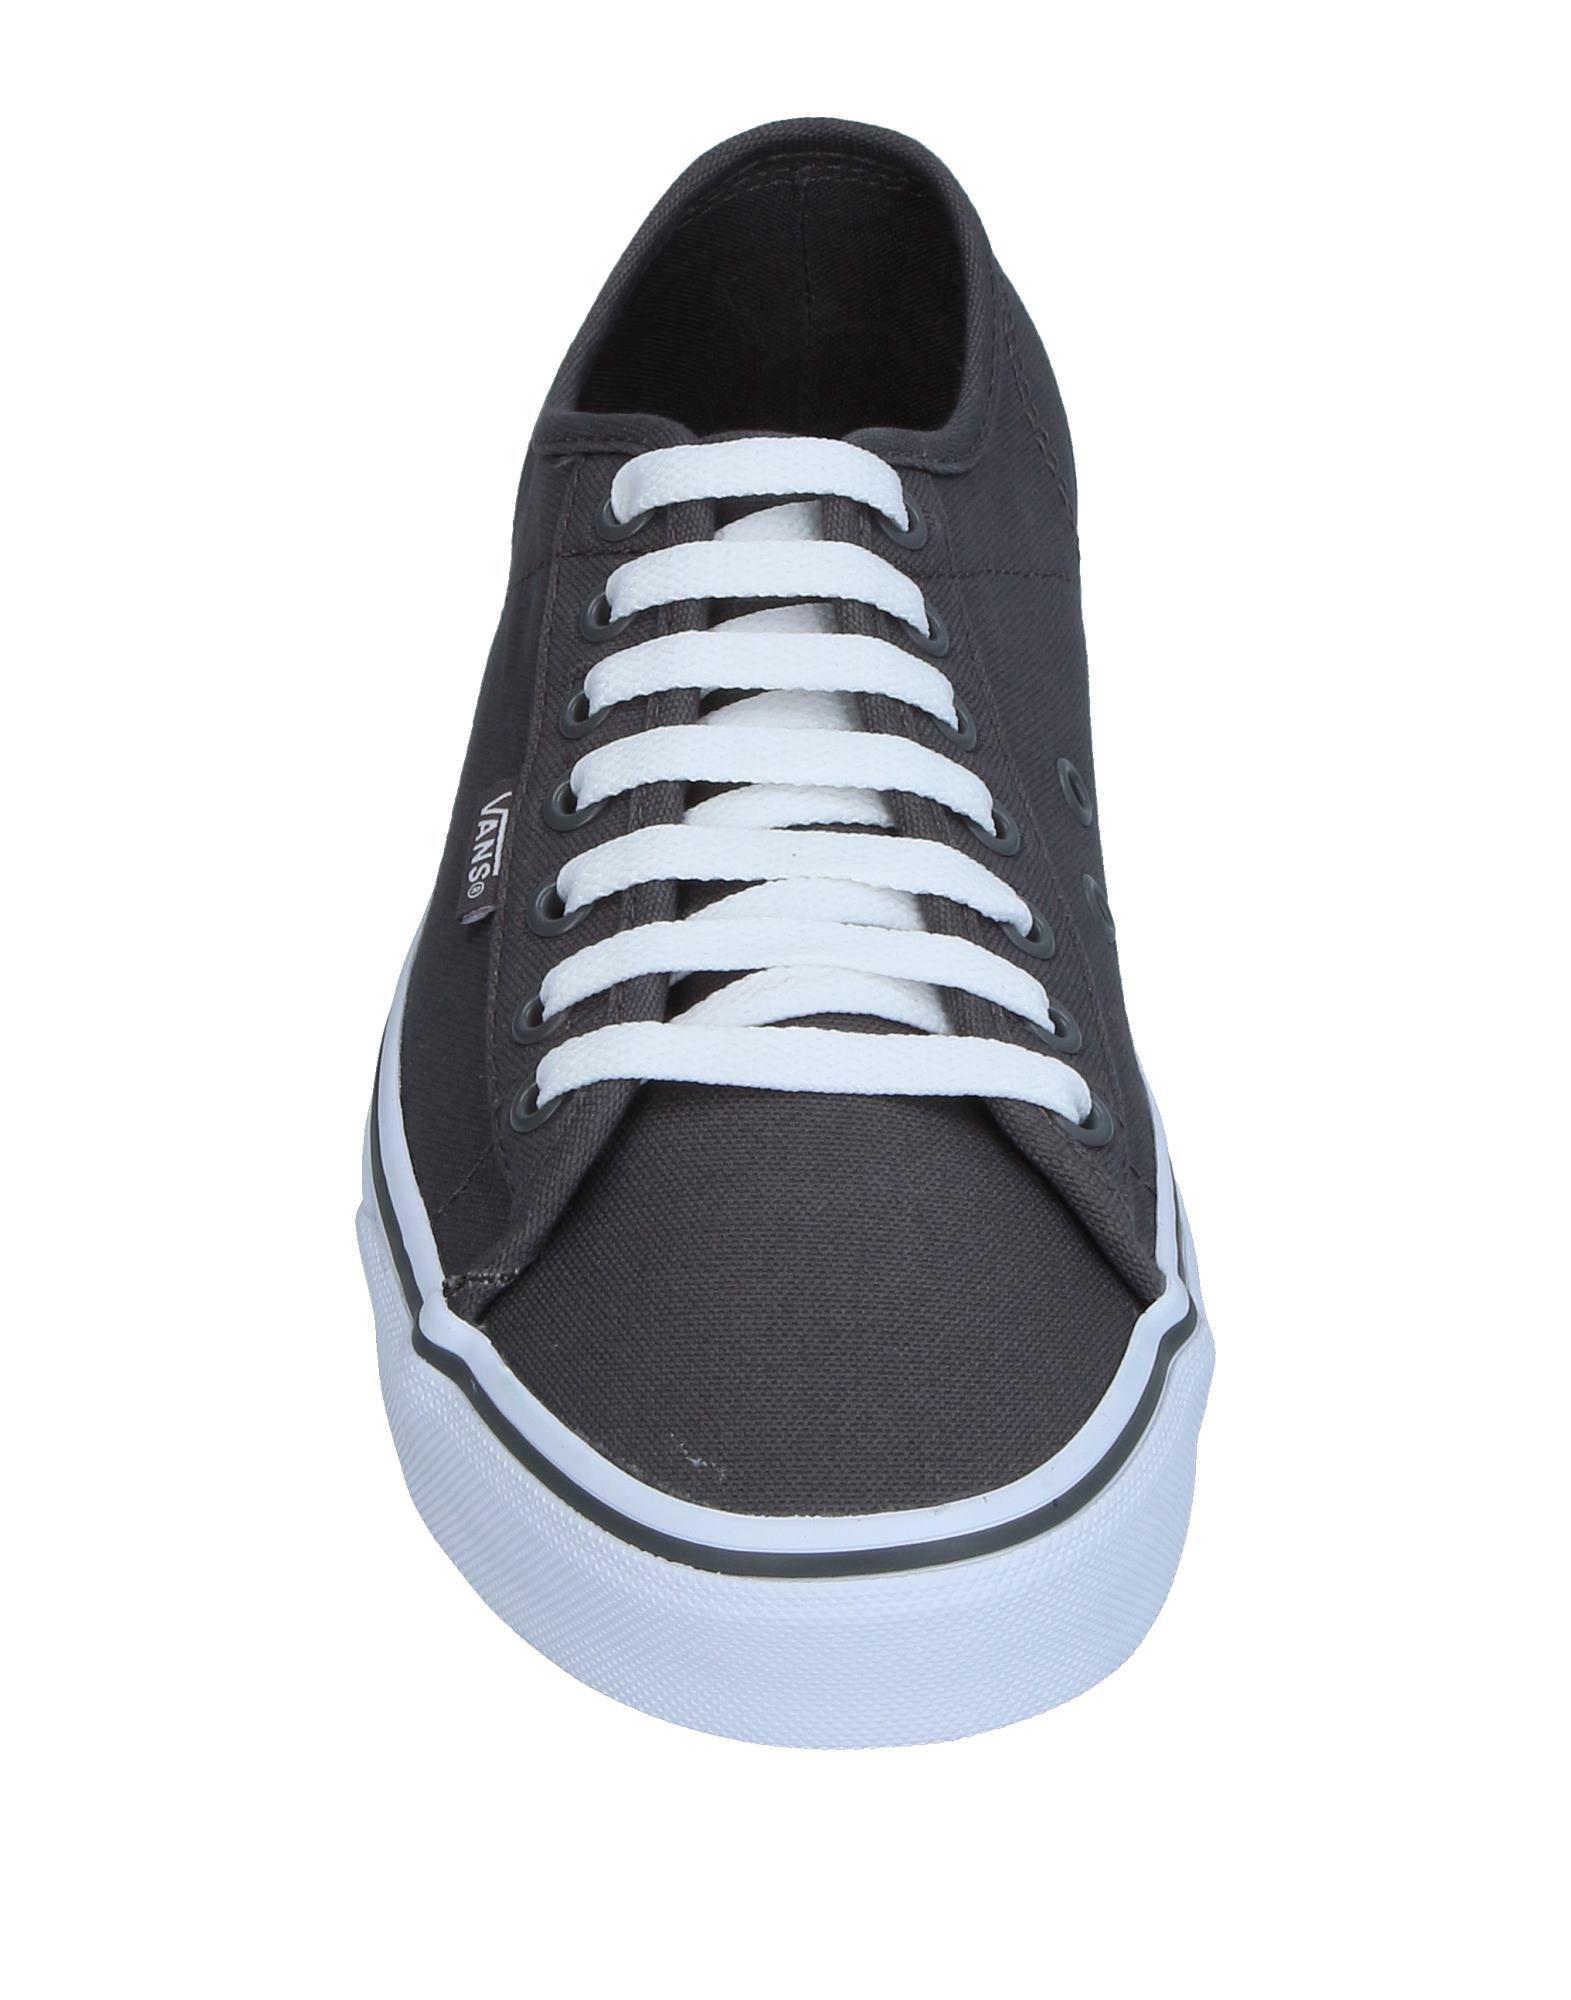 Vans Canvas Low-tops & Sneakers in Grey (Gray) for Men - Lyst